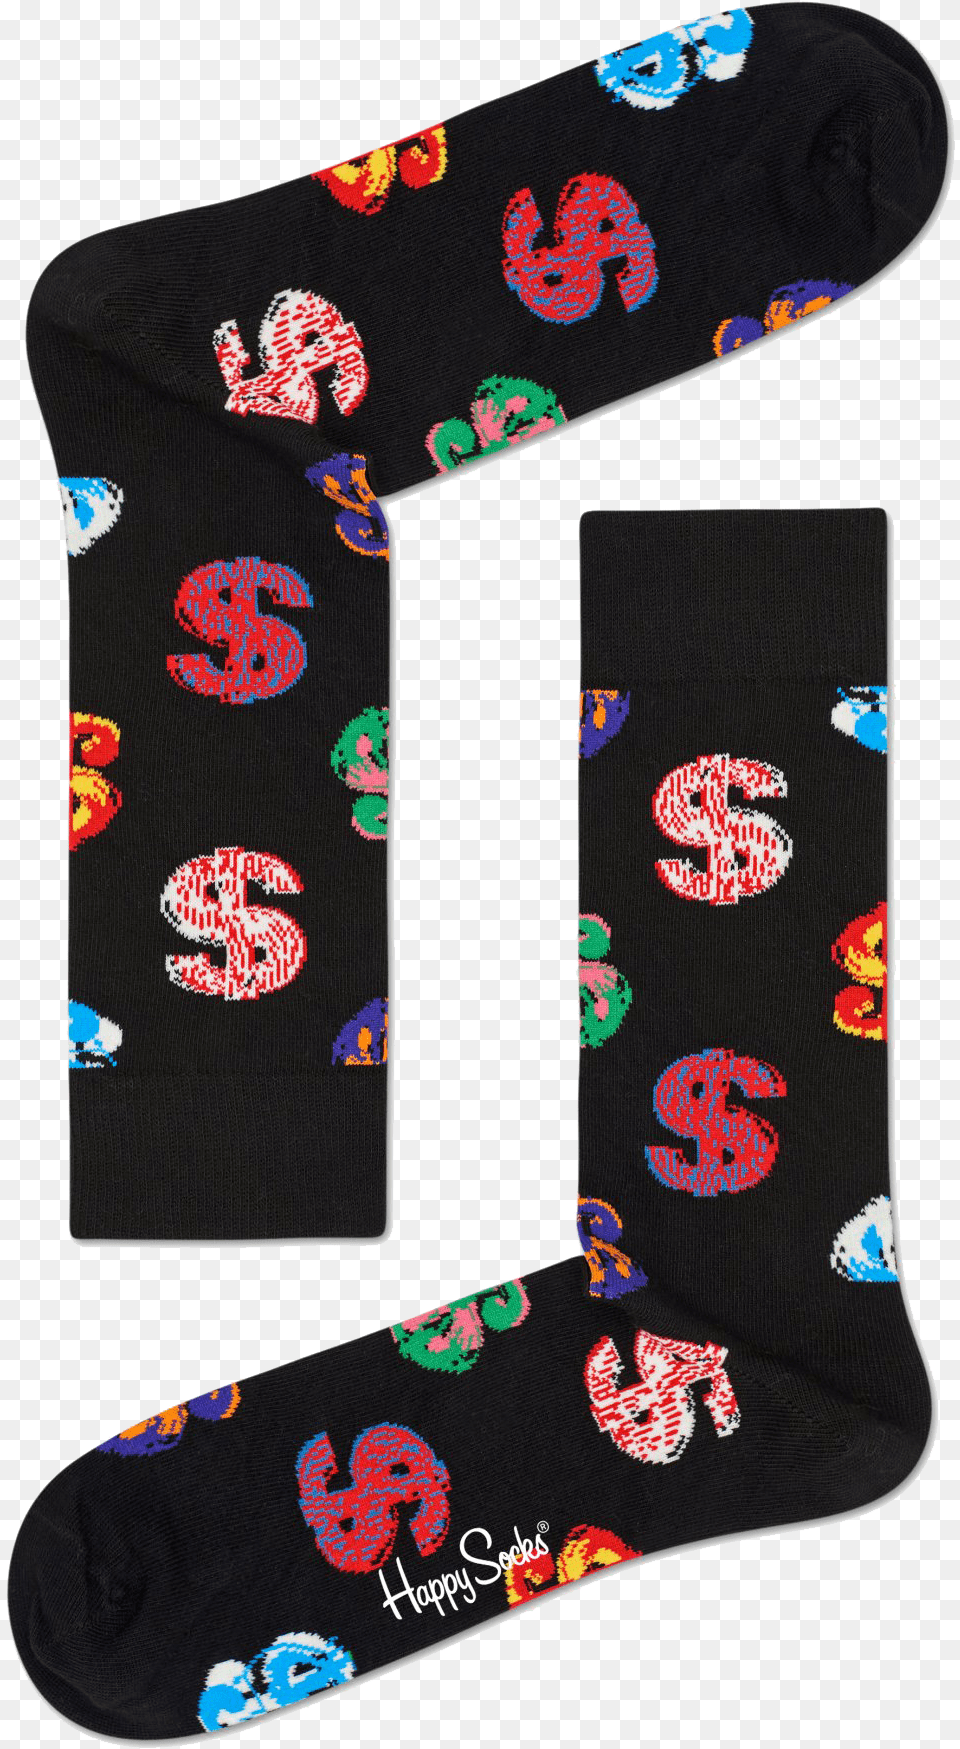 Happy Socks Andy Warhol, Clothing, Hosiery, Sock Png Image